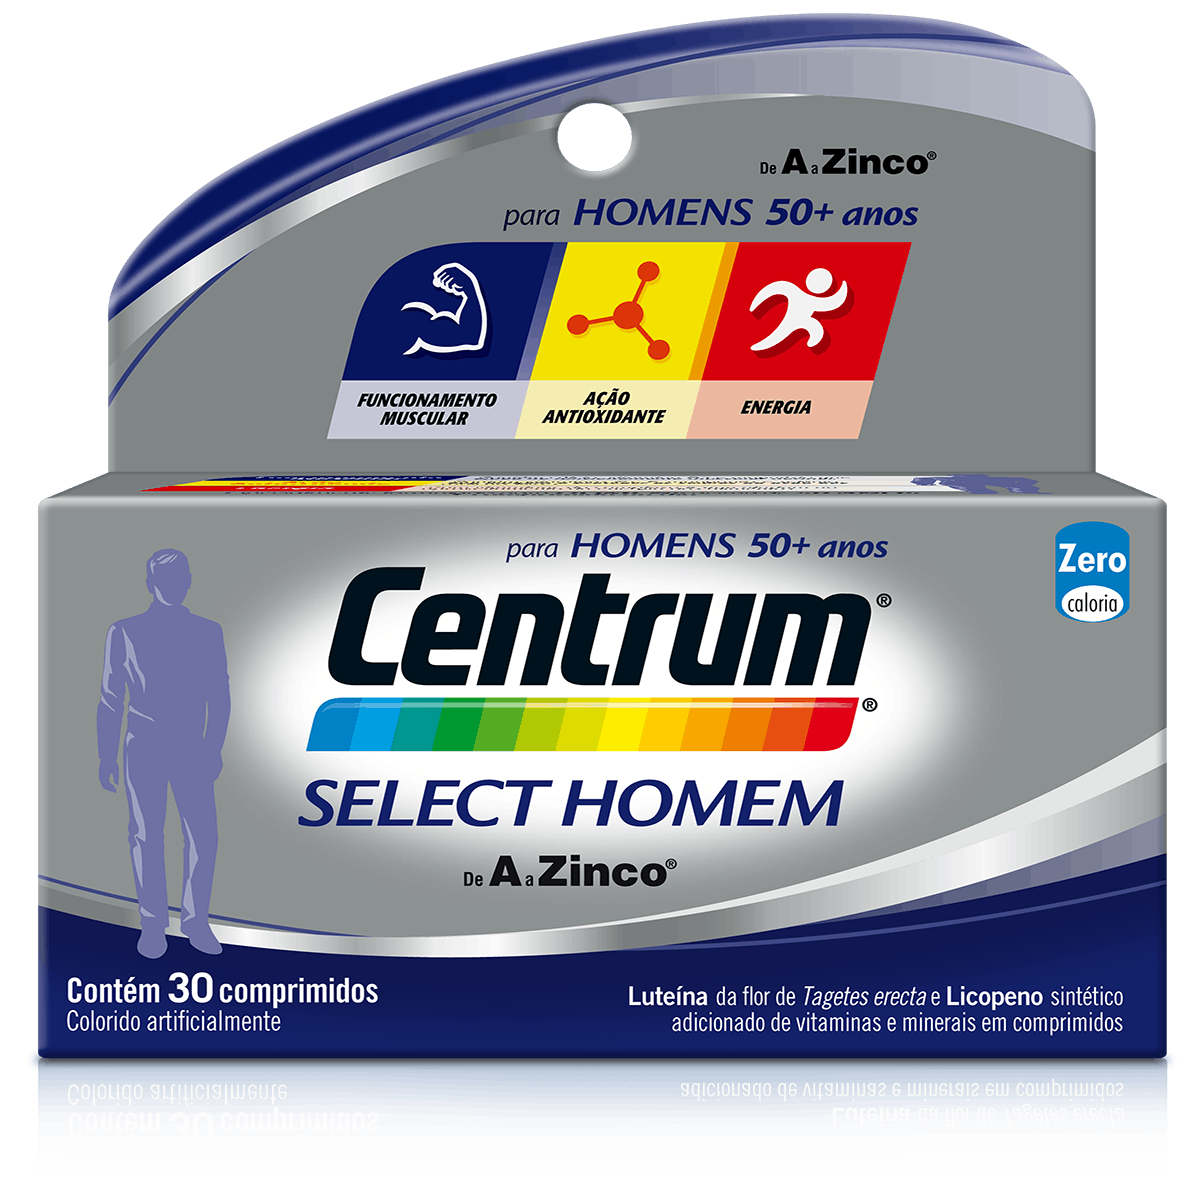 Bottle of centrum Select Homem